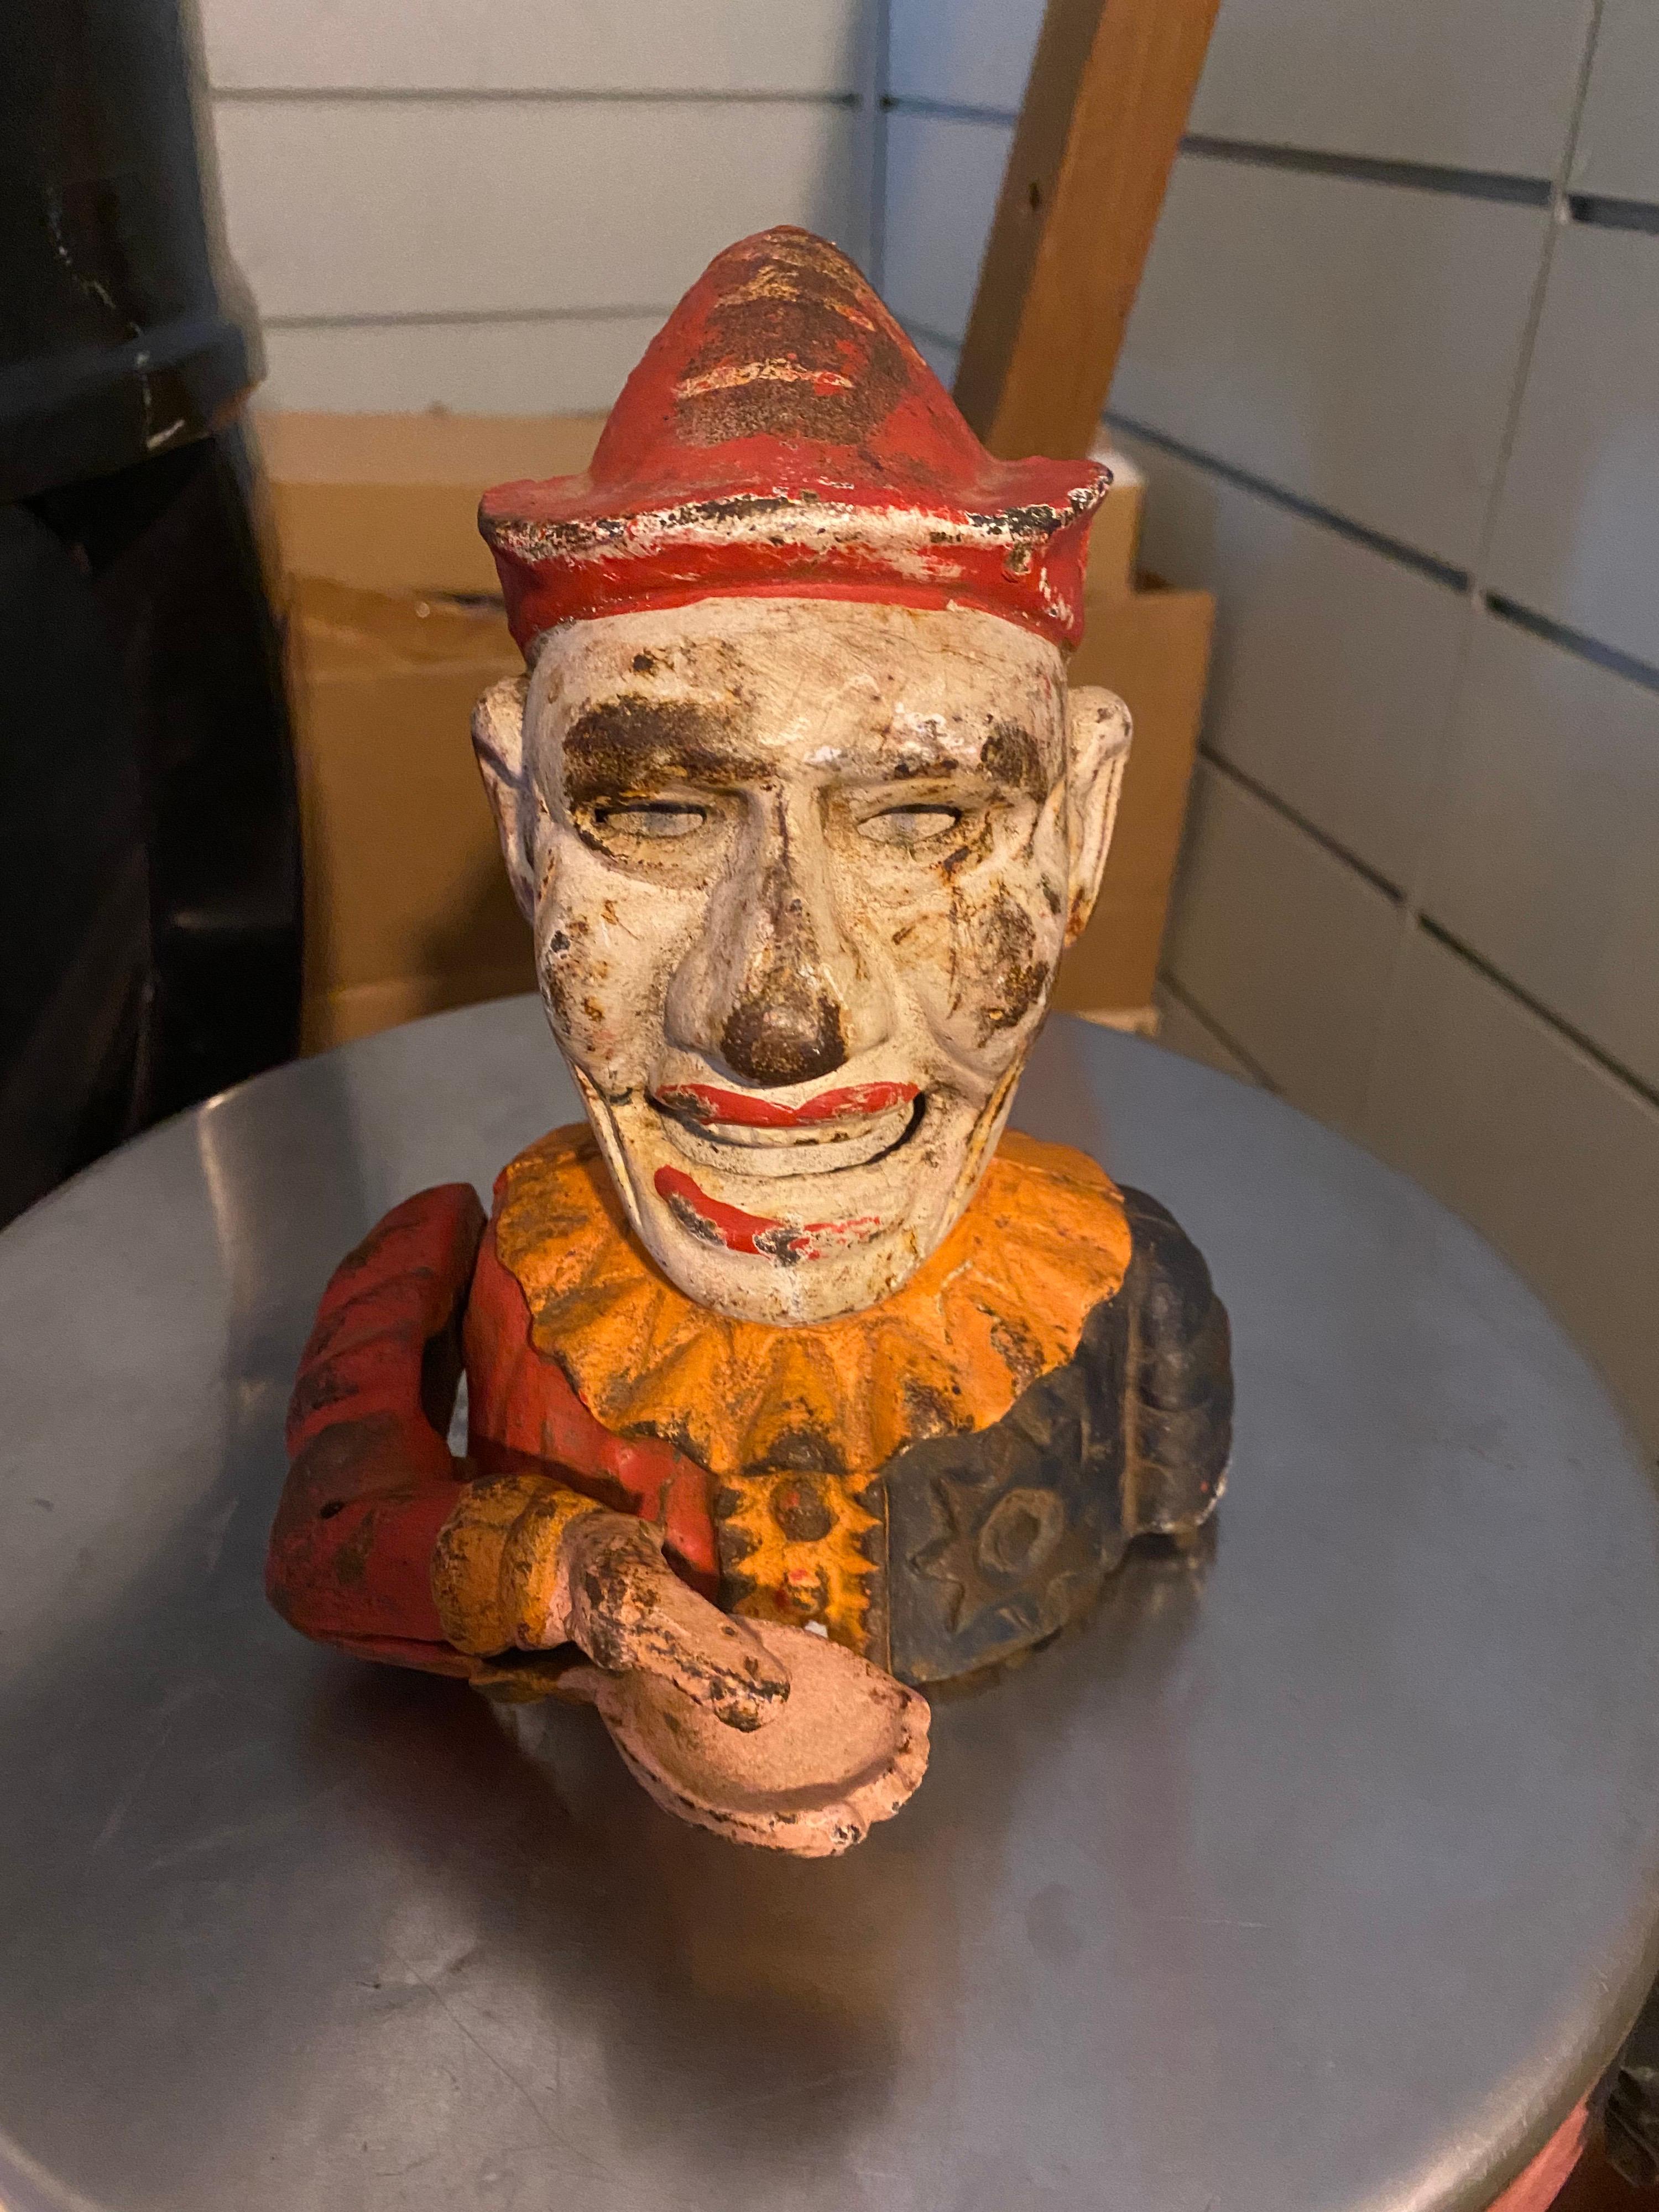 1900S Handbemalter Pierrot der gusseiserne mechanische Spardosenclown. Sehr farbenfrohe mechanische Bank, die als Humpty Dumpty Bank bekannt ist und einen Clown mit offenem Mund und schwingendem Arm zeigt, der eine offene Hand hat, in die man den